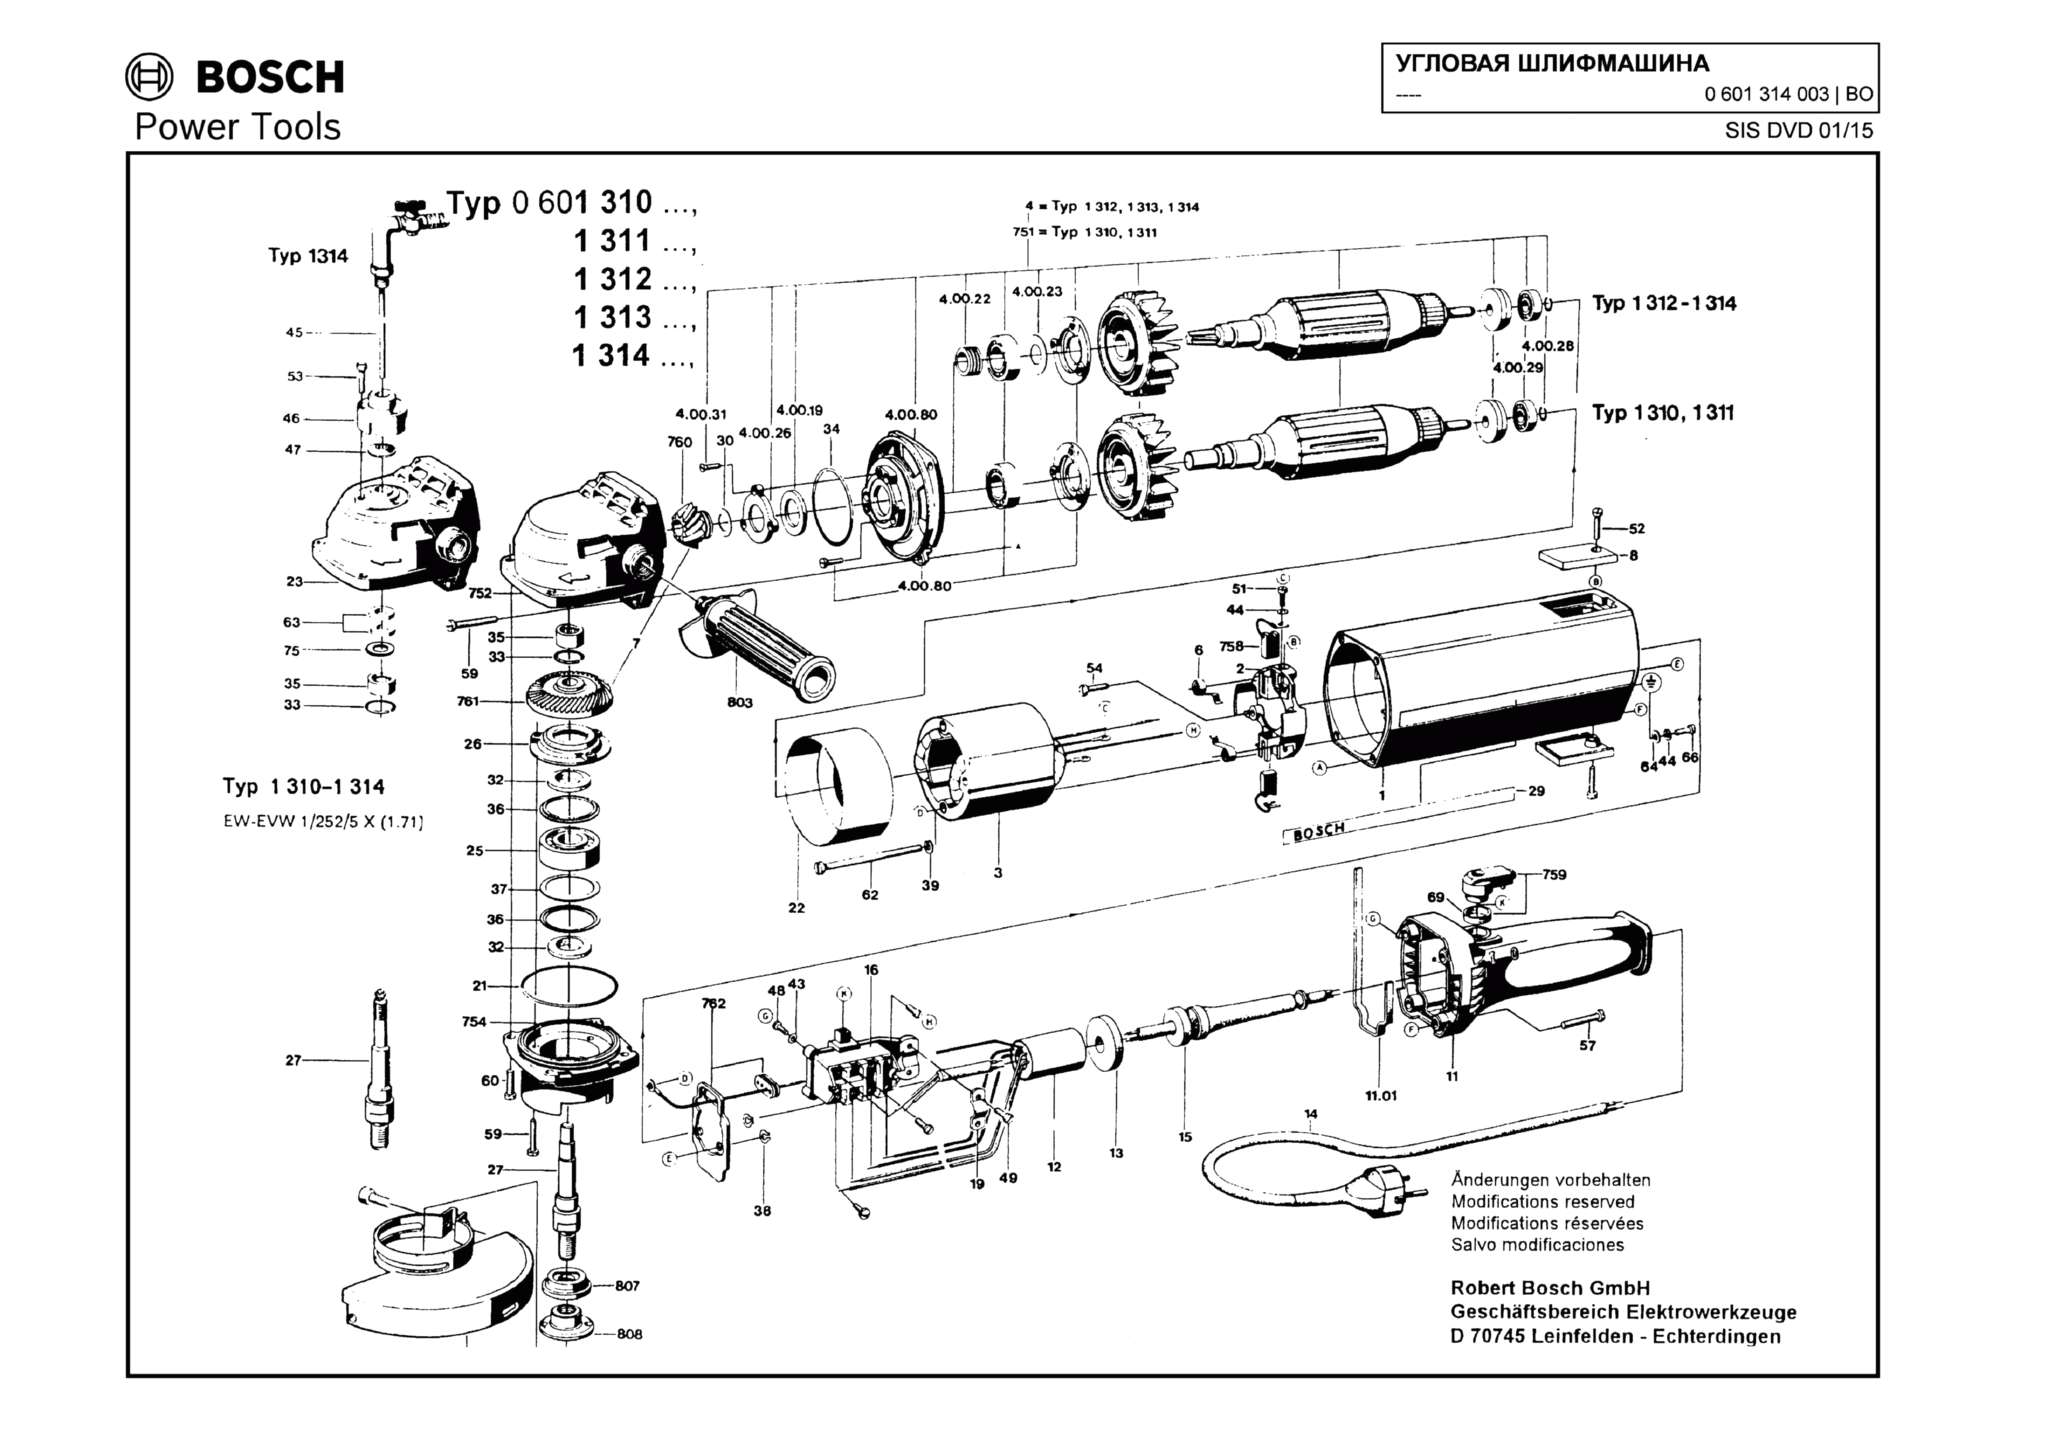 Запчасти, схема и деталировка Bosch (ТИП 0601314003)